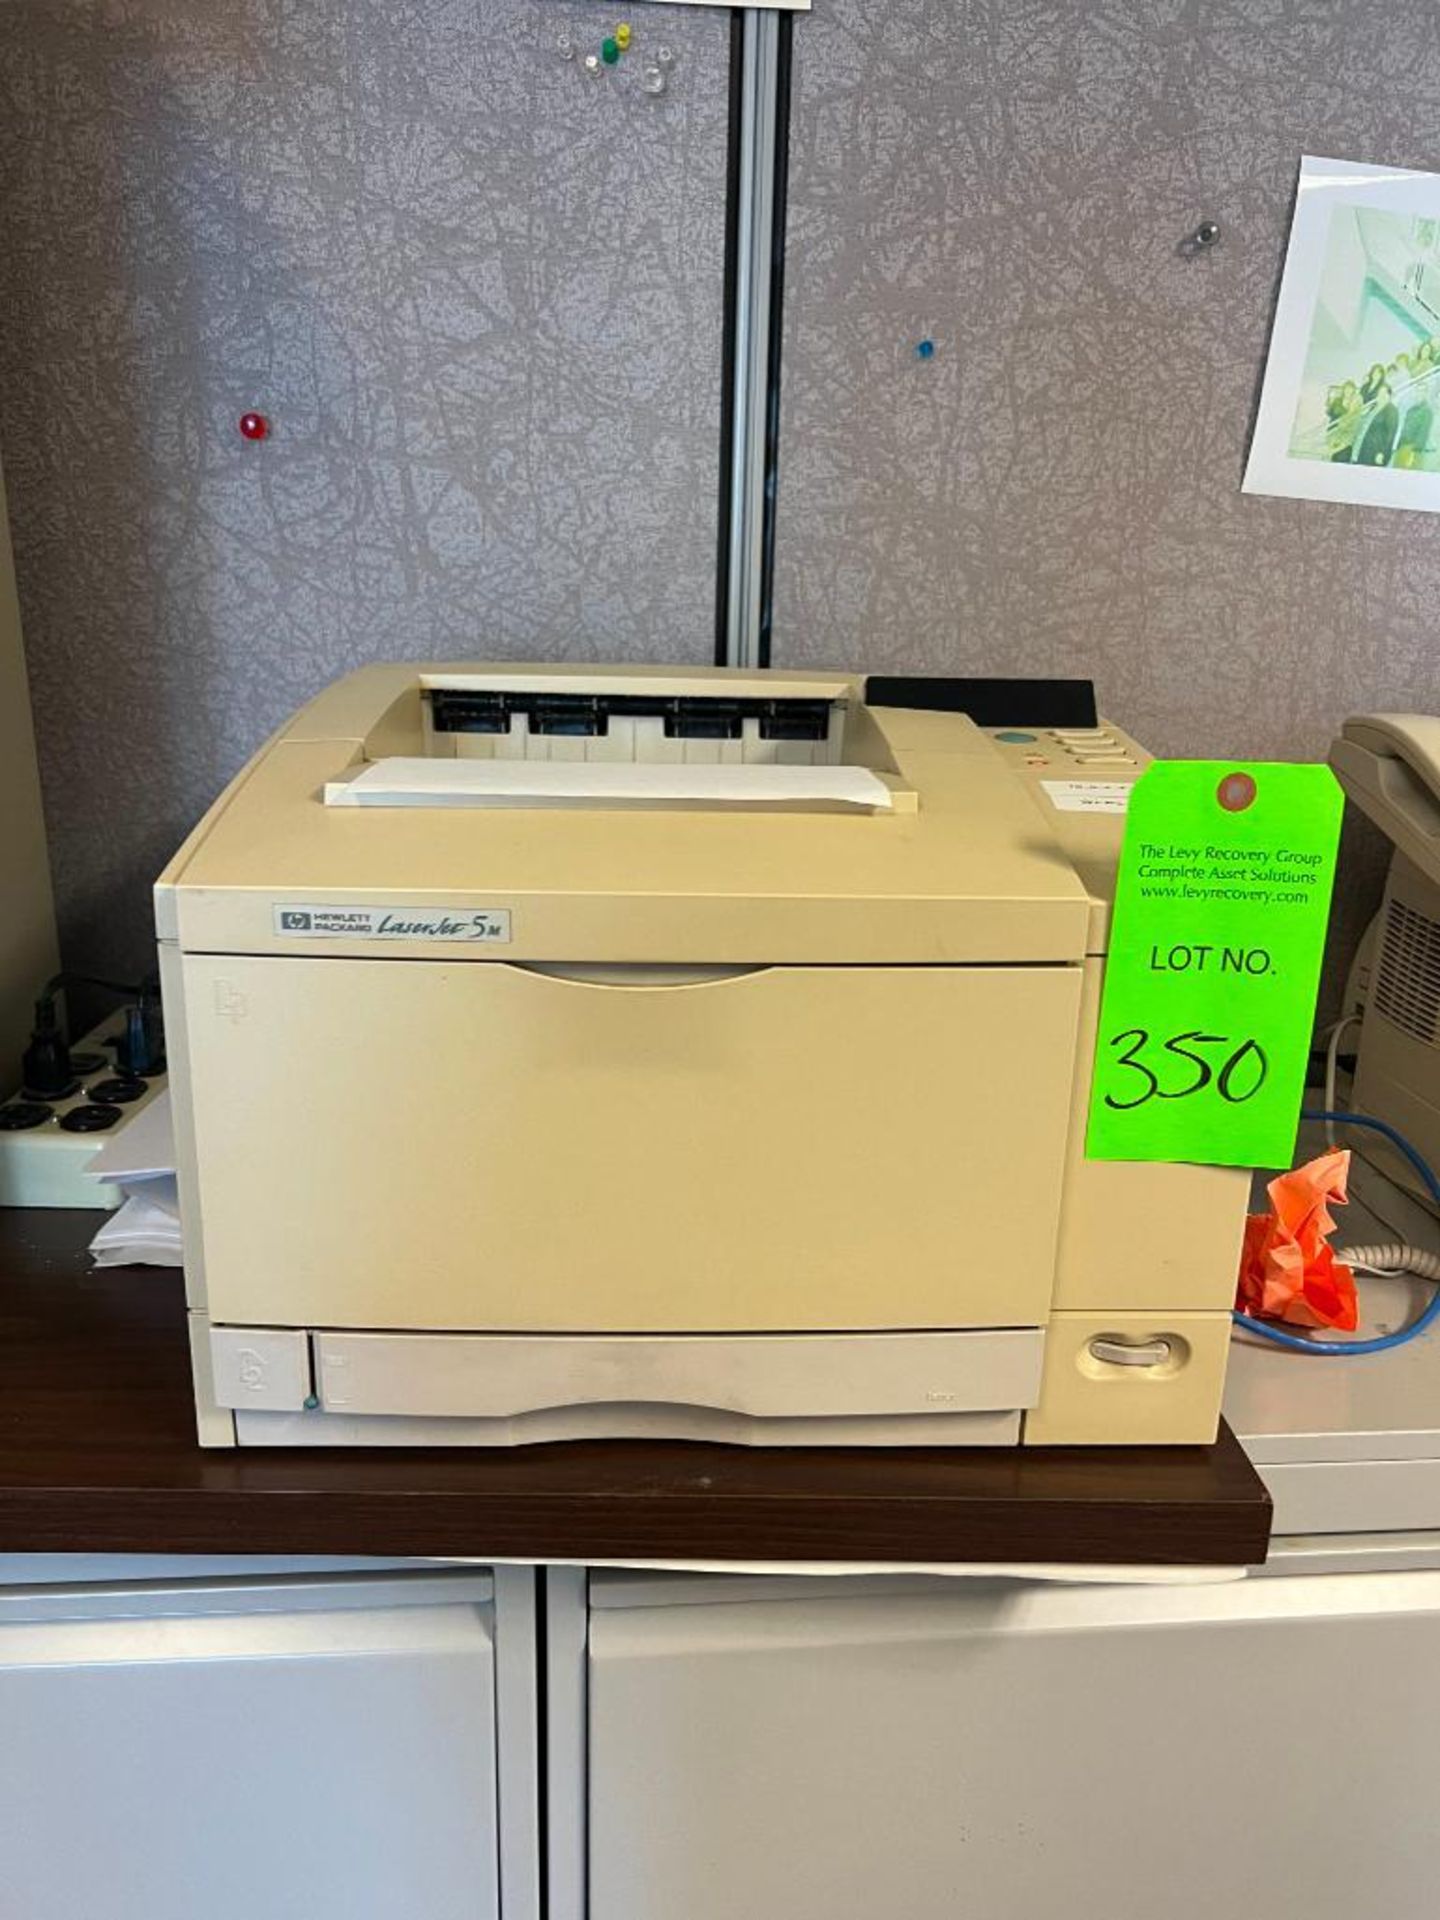 Hewlett-Packard Model LaserJet 5m Printer